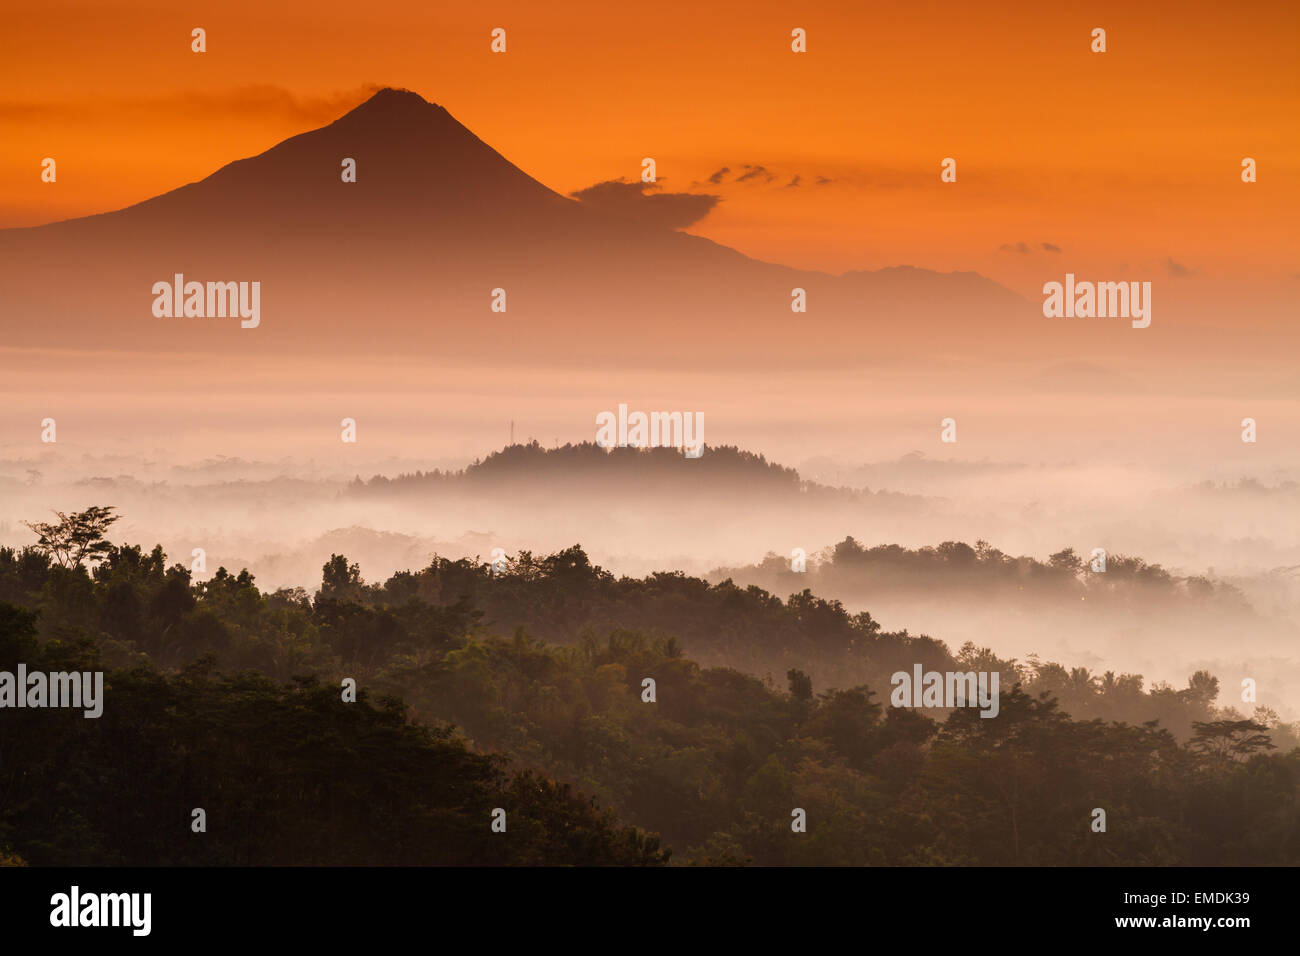 Dschungellandschaft im Morgengrauen in der Nähe von Borobudur Tempel. Magelang, Java. Indonesien, Asien. Stockfoto